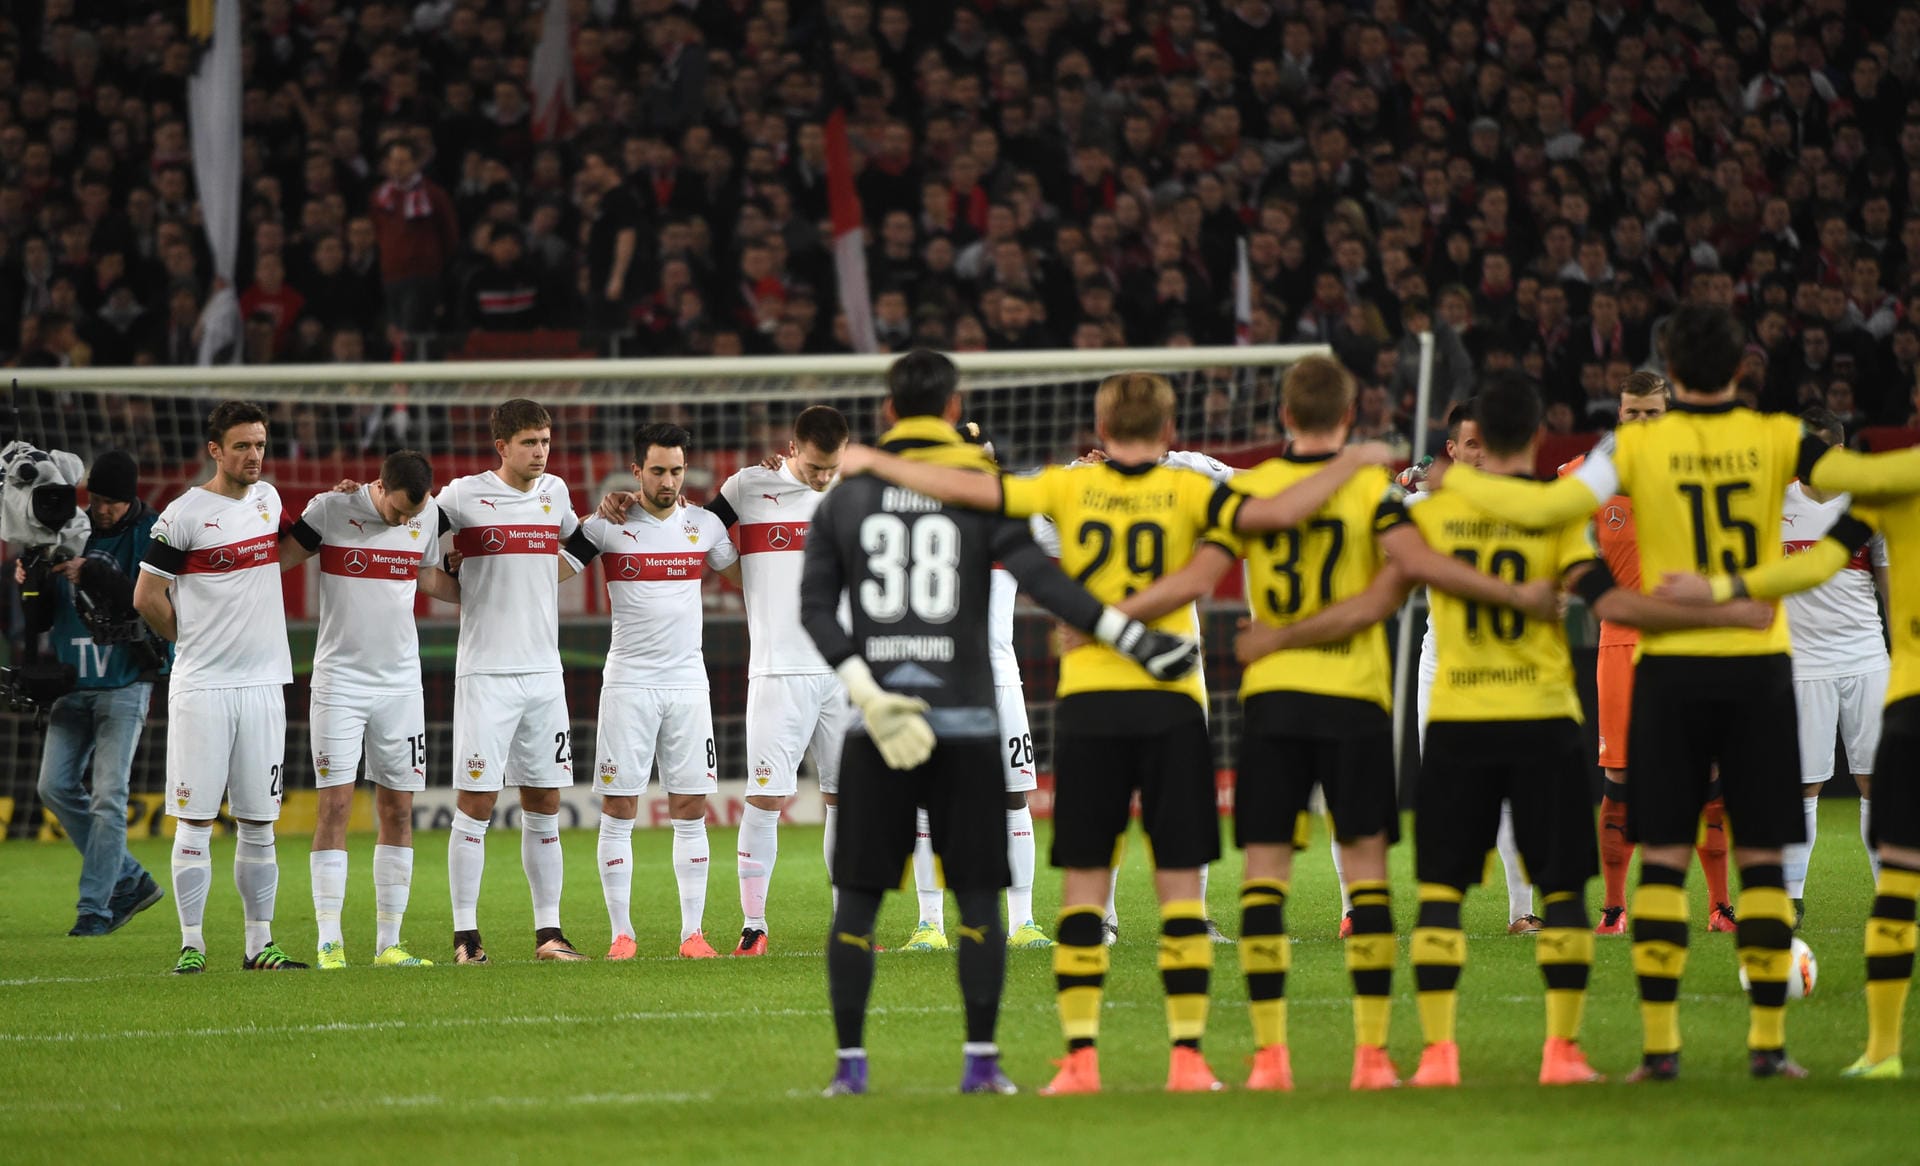 Auch beim zweiten Viertelfinale am Dienstag zwischen dem VfB Stuttgart und Borussia Dortmund gedachten Spieler und Zuschauer vor dem Anpfiff den Opfern des Zugunglücks.